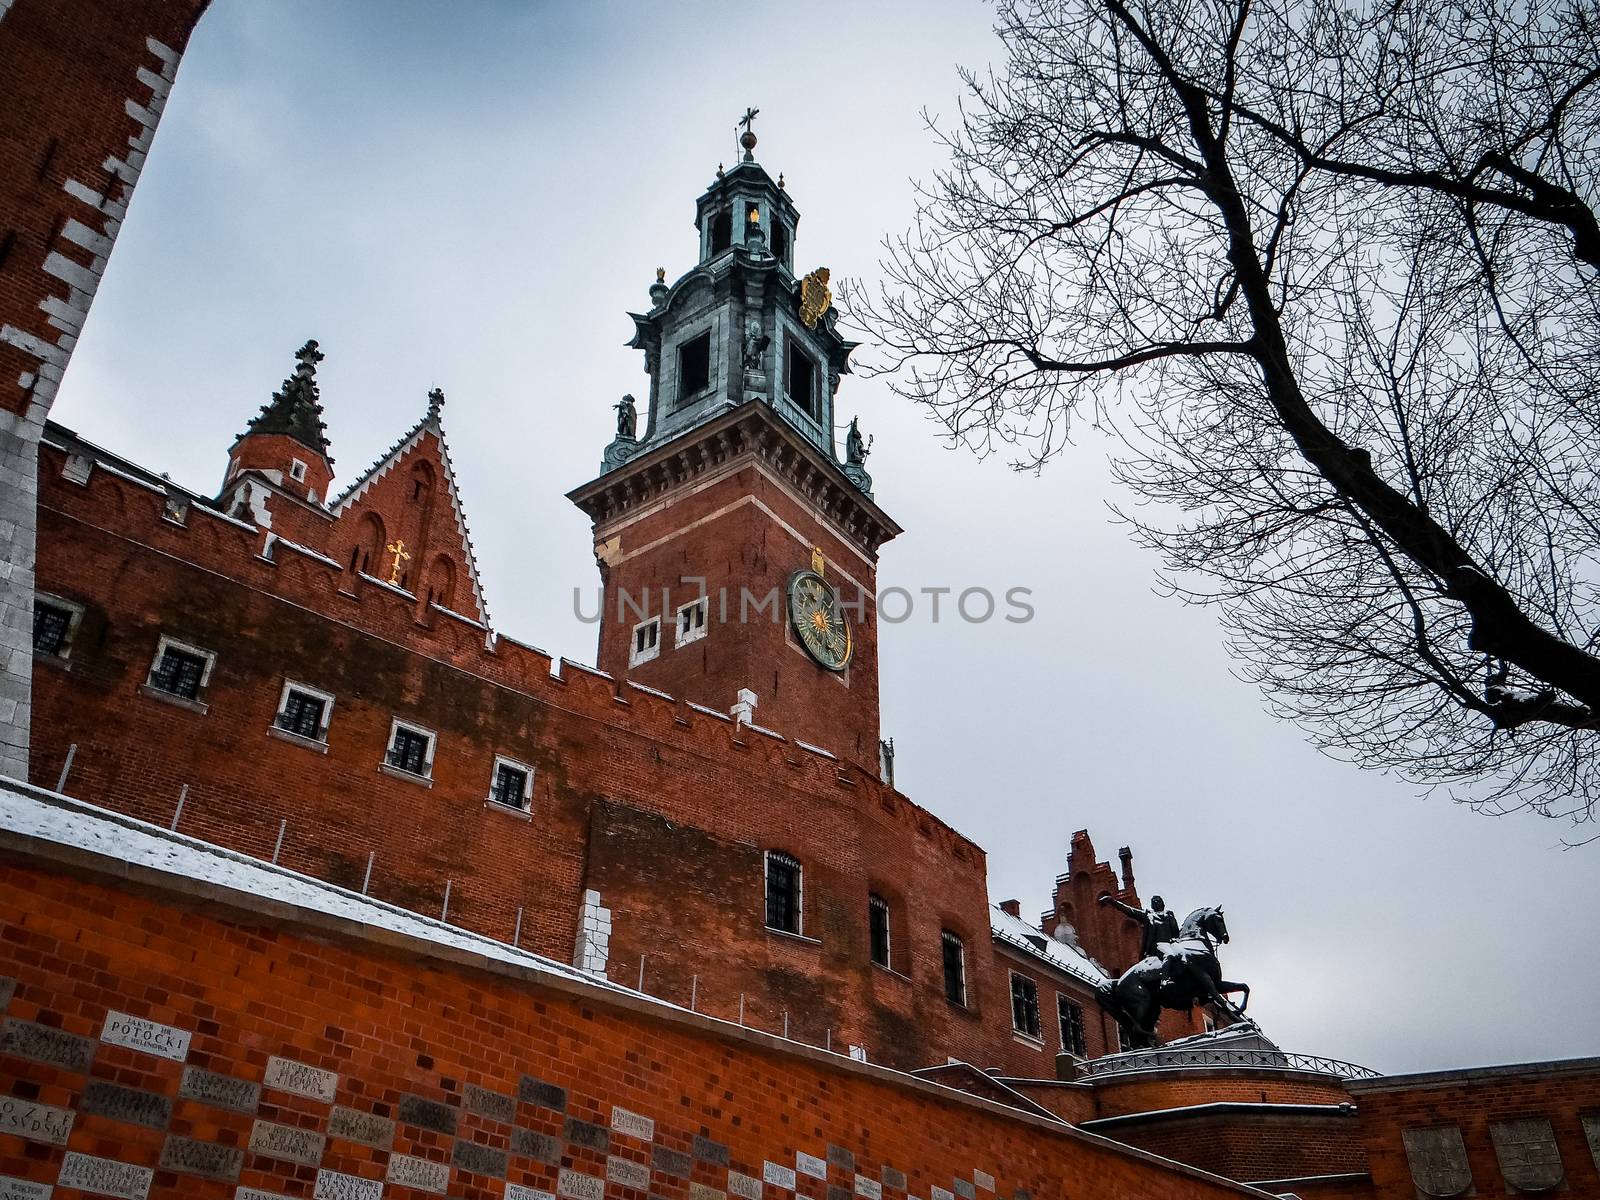 Wawel Royal Castle in Krakow by natali_brill